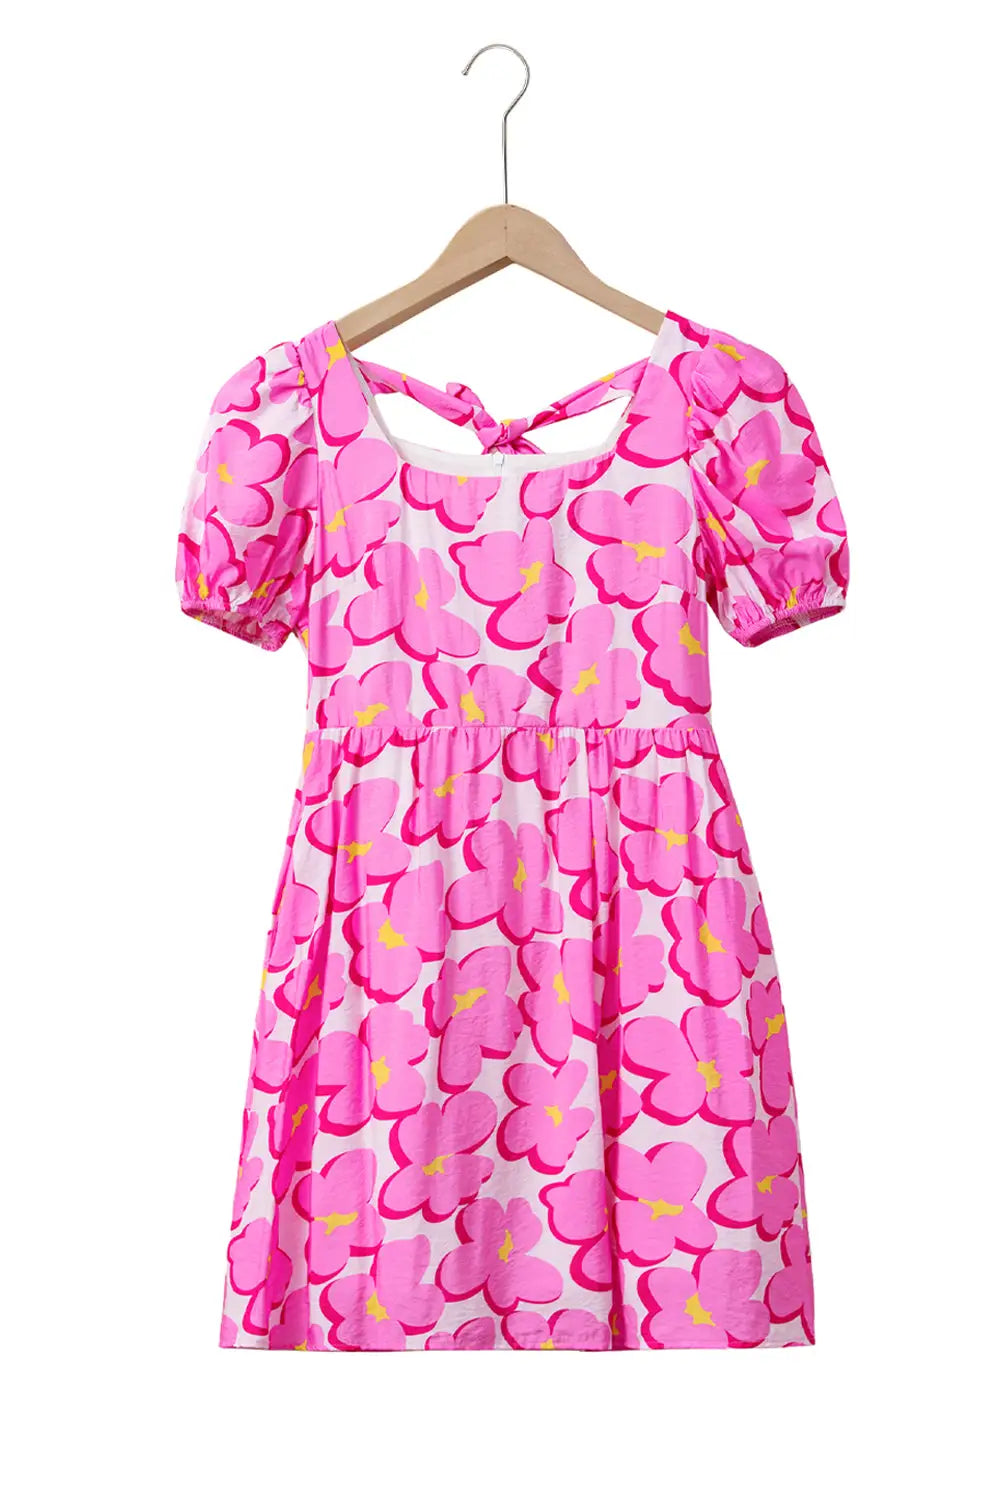 Rose floral print square neck empire waist flowy dress - dresses/floral dresses